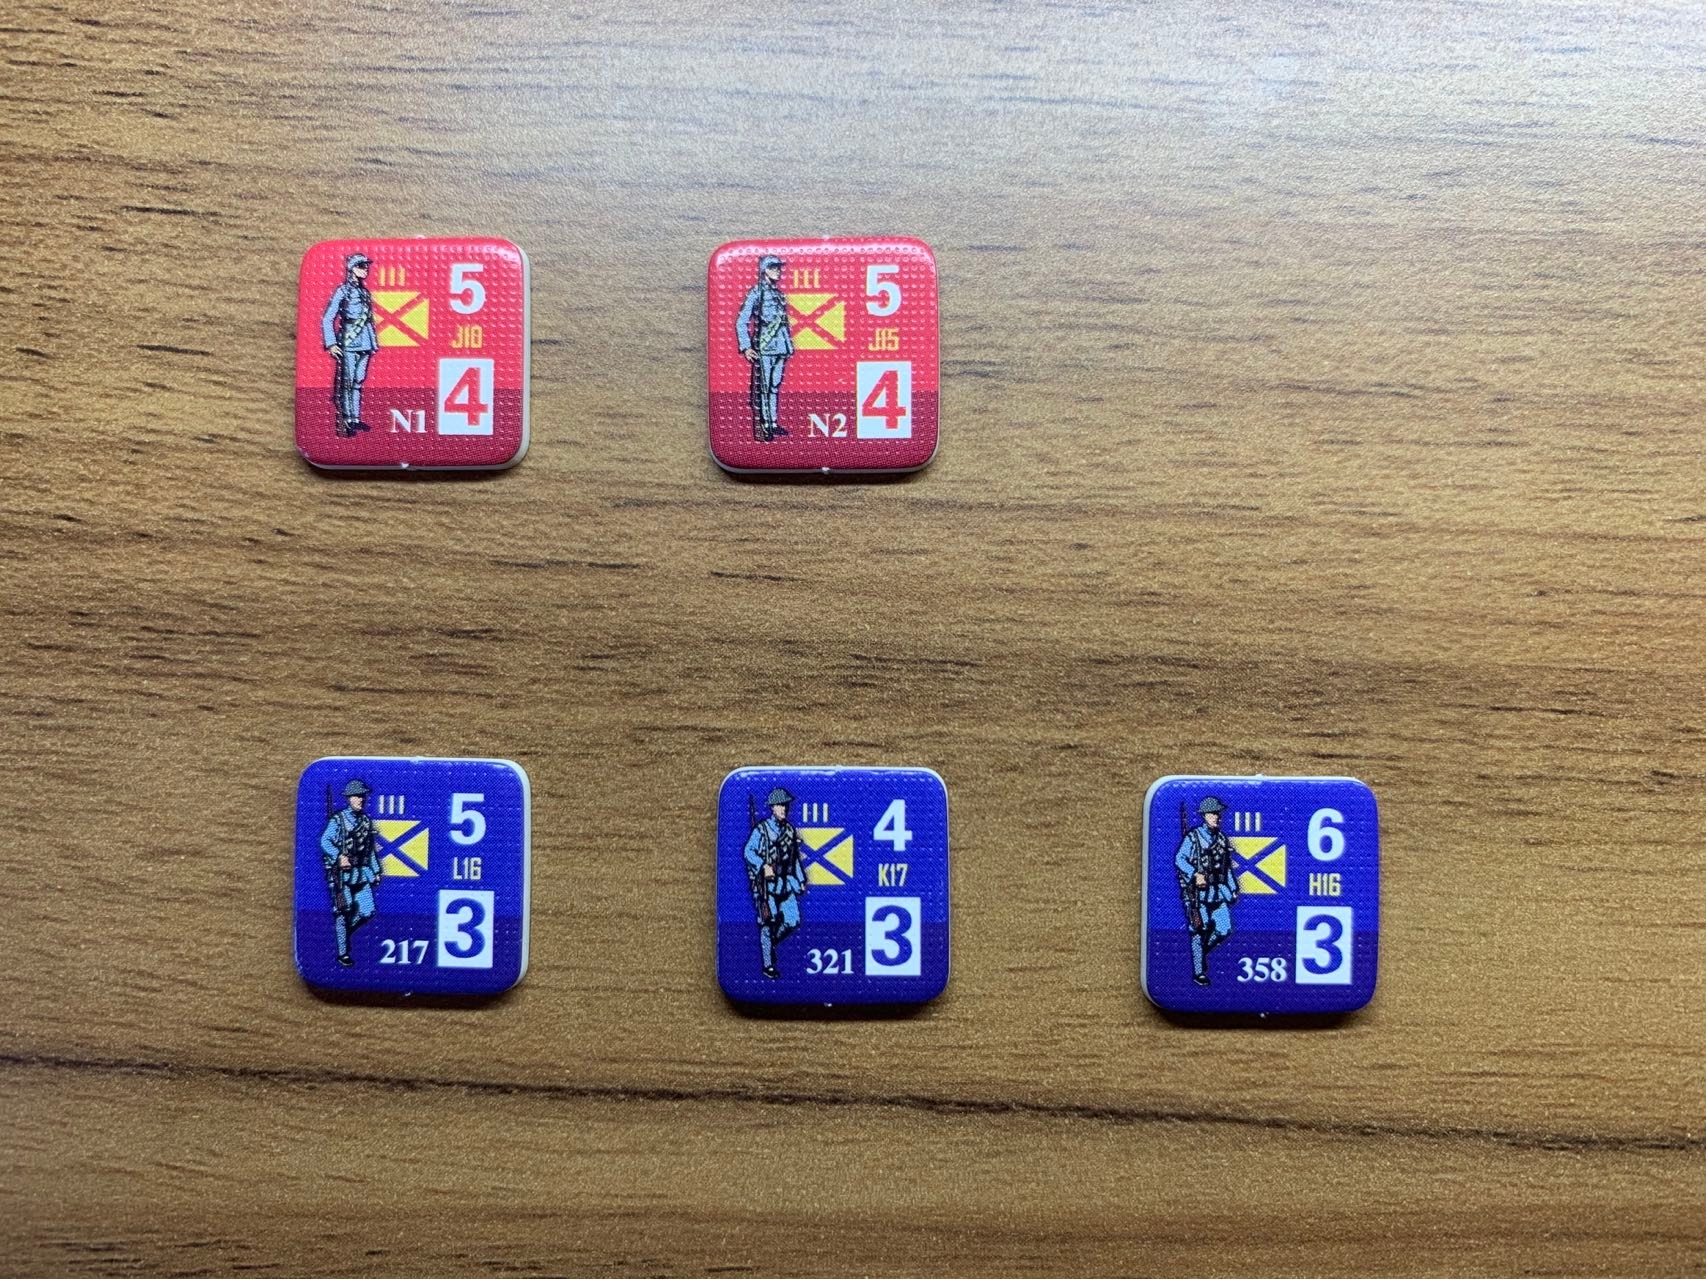 遊戲中用來表示國共雙方正規軍的算子，下方三枚為國軍部隊，玩家可以通過算子下部的番號確認哪一隻部隊是“358團”